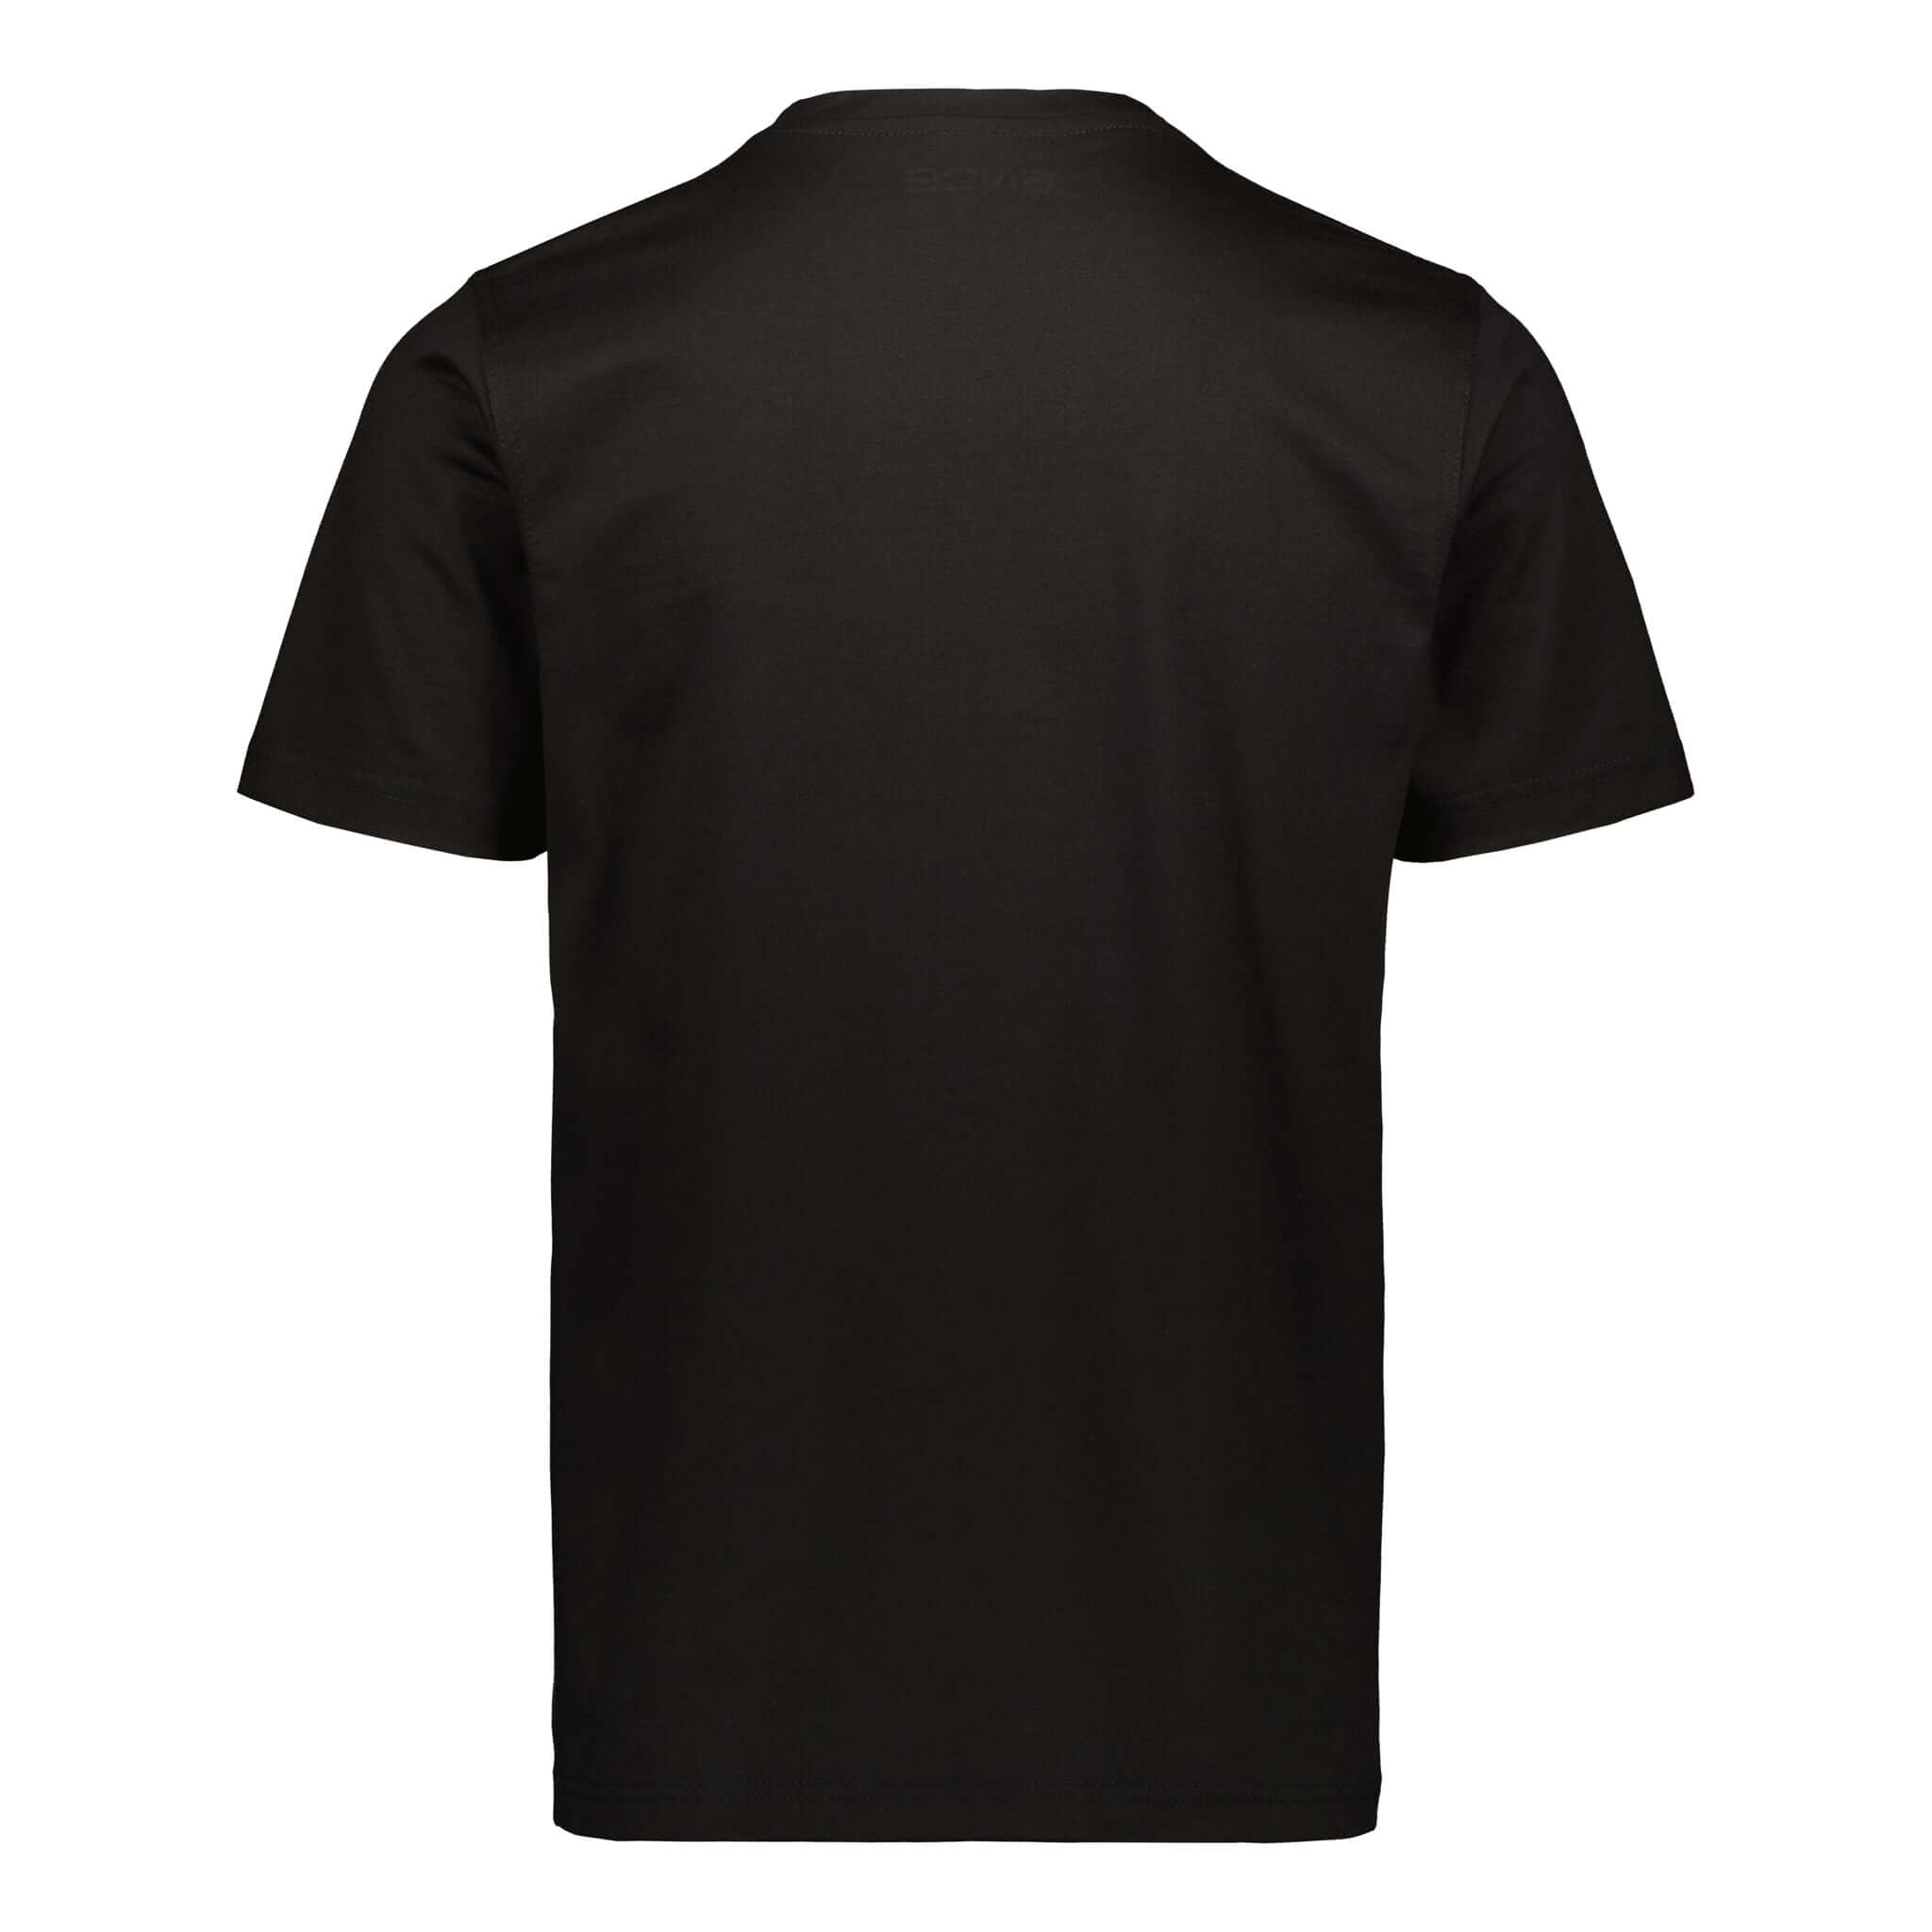 ENCE Square Black T-Shirt